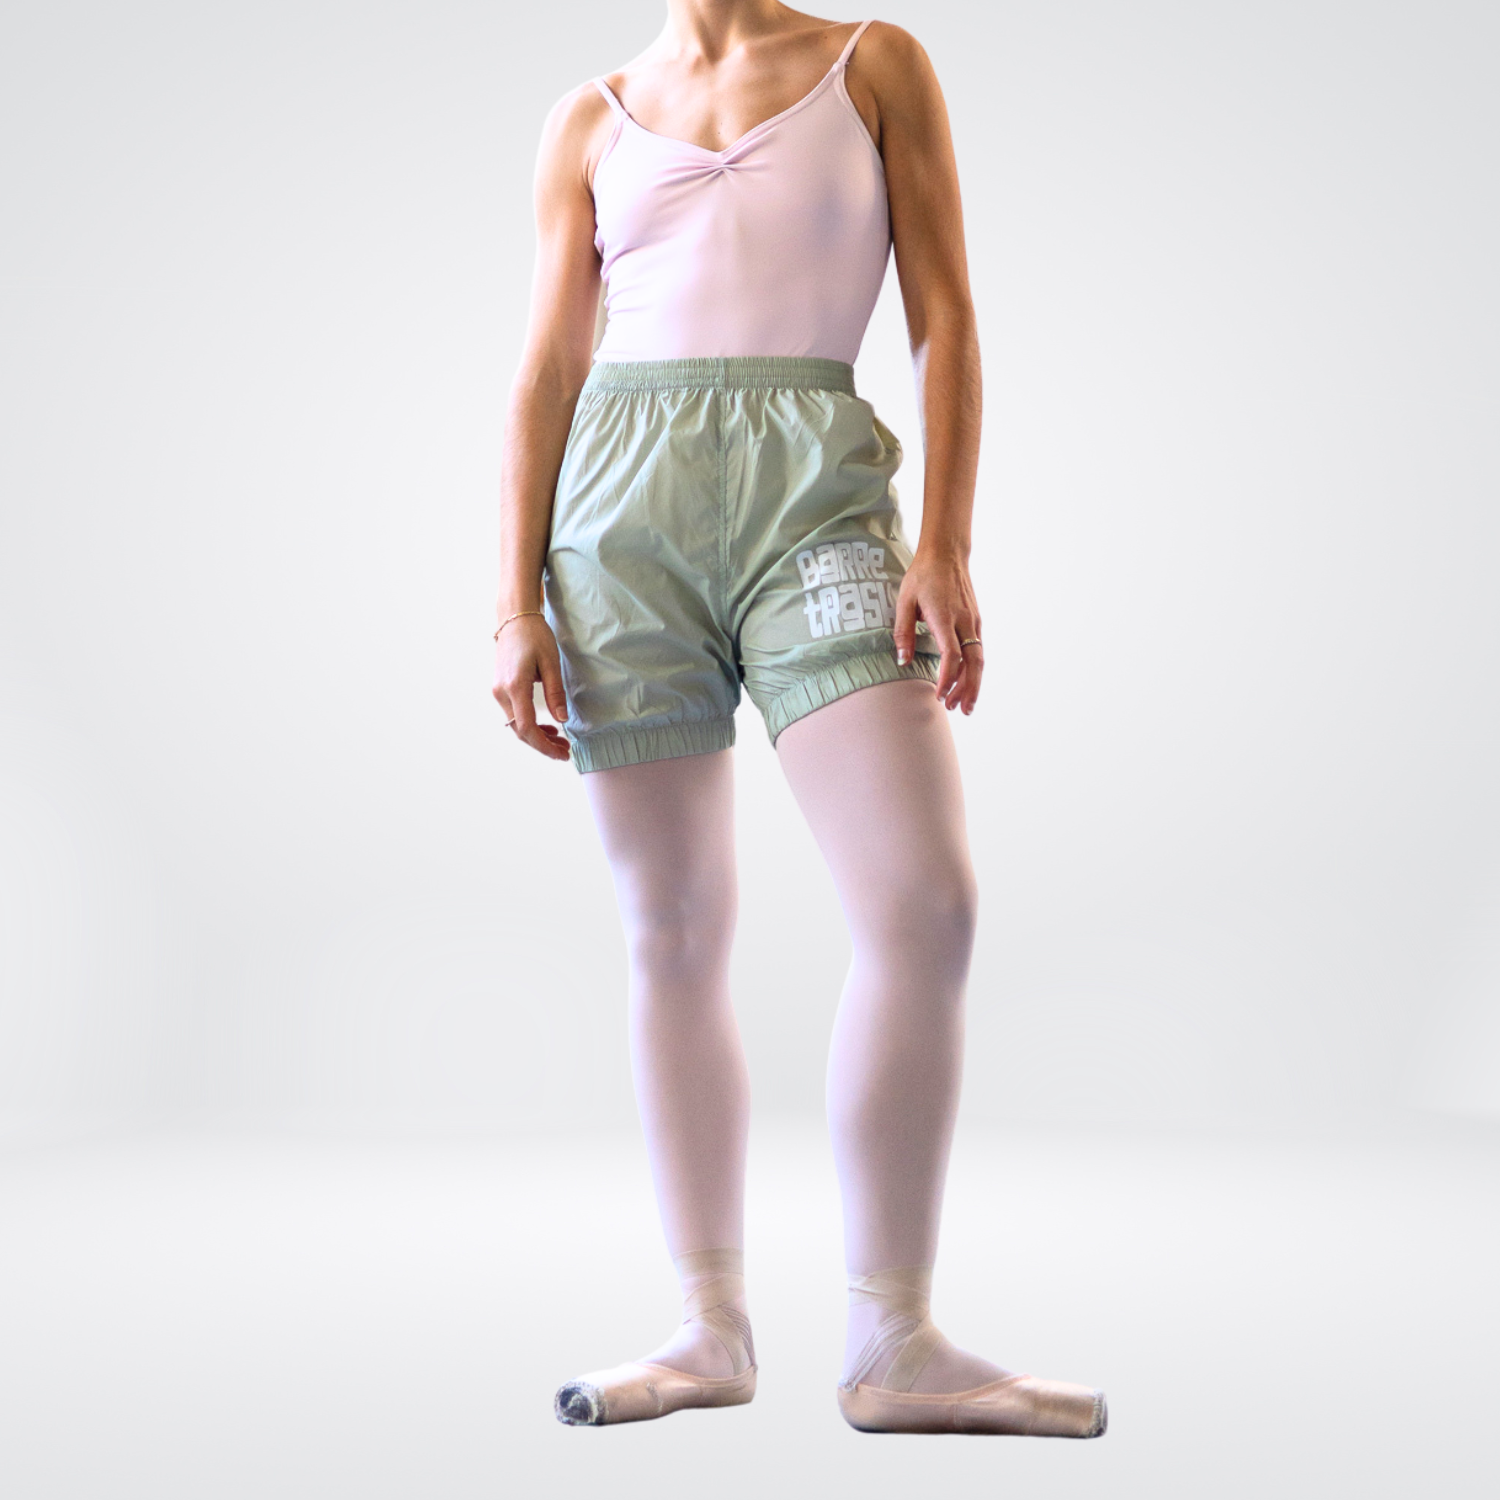 Trash Bag Shorts - Ballet Ripstop - Trashbag Shorts Dance Warmups ...